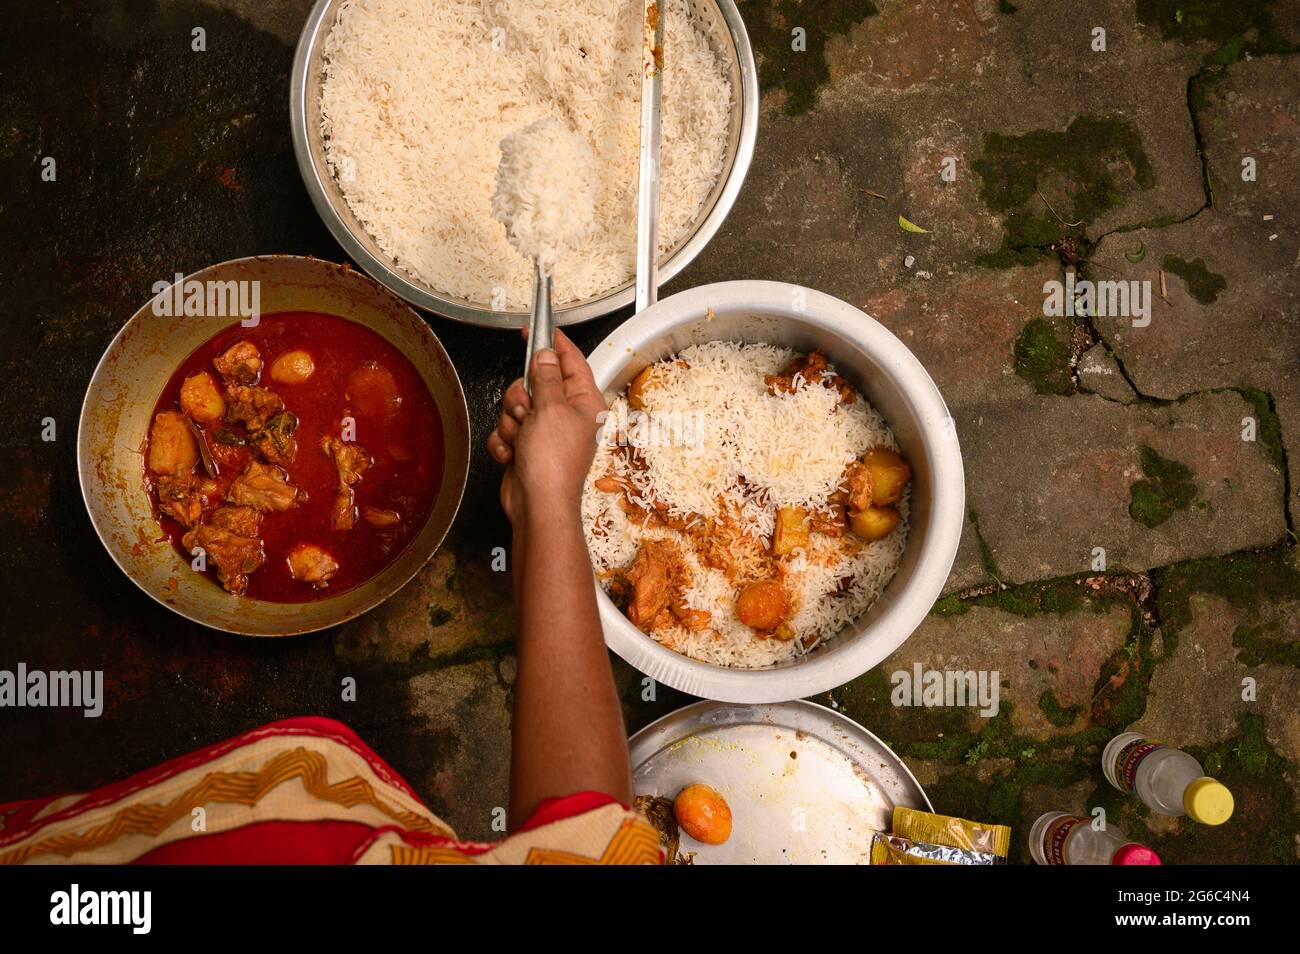 Eine Frau kocht Biryani. Biryani ist ein indo-arisches Wort, das vom persischen Wort „Birian“ abgeleitet wurde, was ‘vor dem Kochen gebraten’ und „Birinj“, das persische Wort für Reis, bedeutet. Die Biryani ist eines der beliebtesten und bestellten Gerichte in Indien. Es wird mit indischen Gewürzen, Reis und Fleisch (Huhn, Rindfleisch, Ziege, Lamm, Garnelen, Fisch), und manchmal, zusätzlich, Eier oder Gemüse wie Kartoffeln in bestimmten regionalen Sorten. Es gibt verschiedene Theorien über die Herkunft dieses leckeren Gerichts. Viele Historiker glauben, dass Biryani aus Persien stammte und von den Moguln nach Indien gebracht wurde. Stockfoto